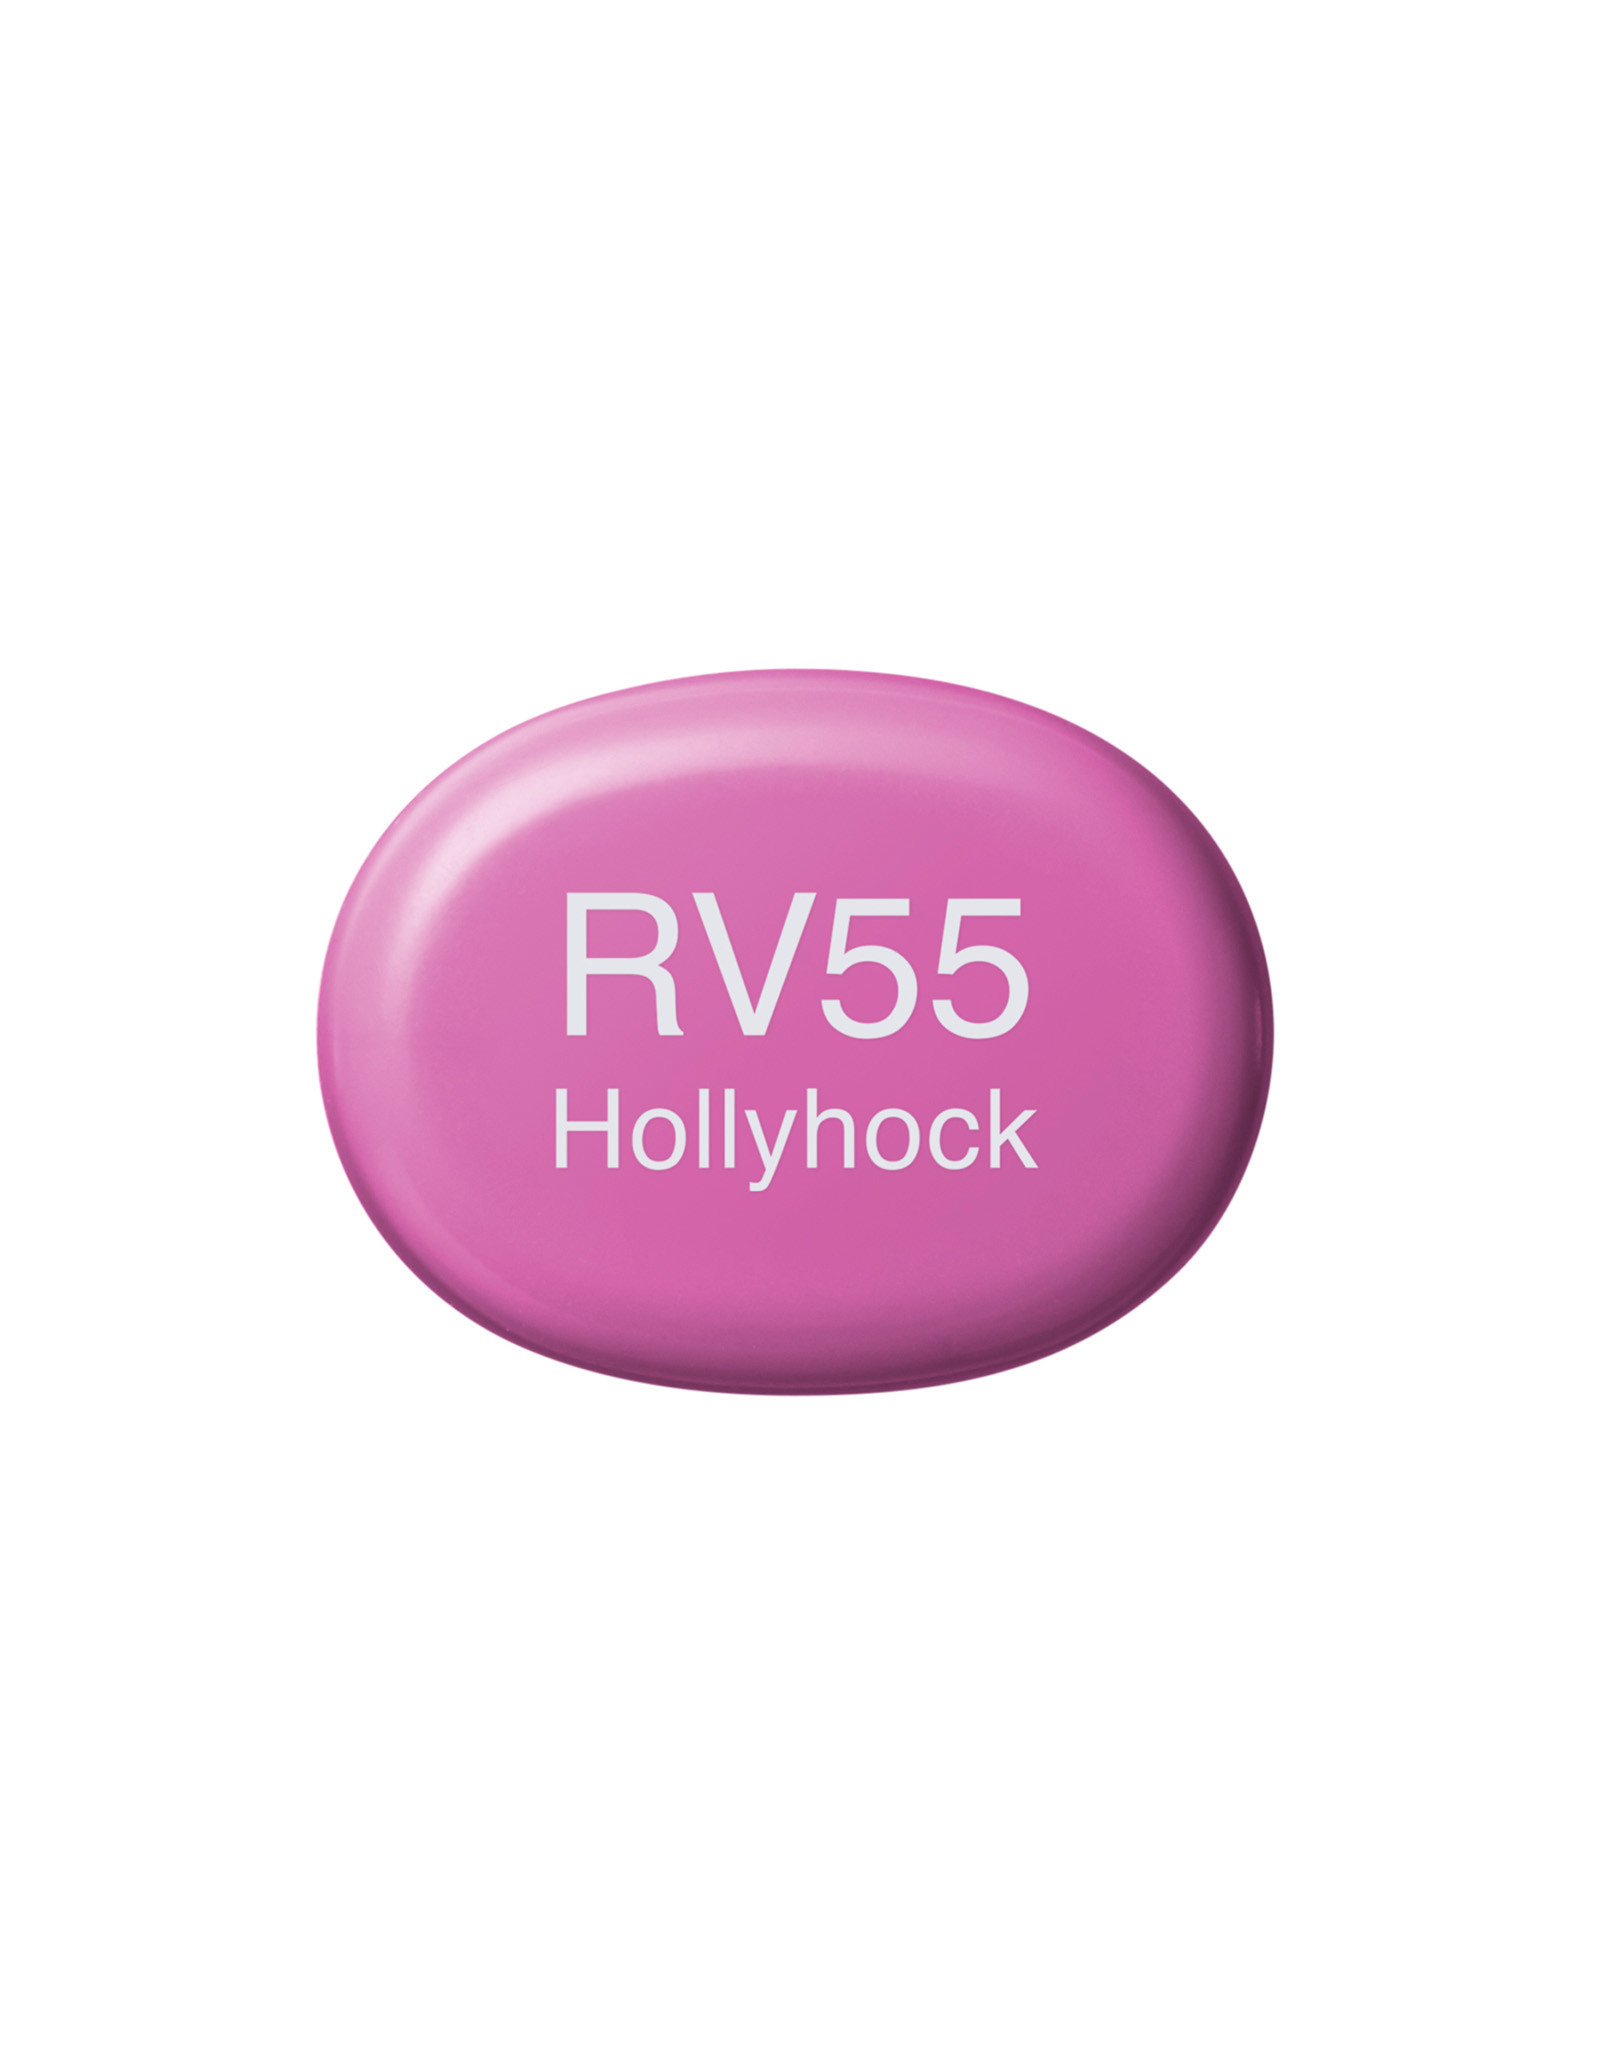 COPIC COPIC Sketch Marker RV55 Hollyhock